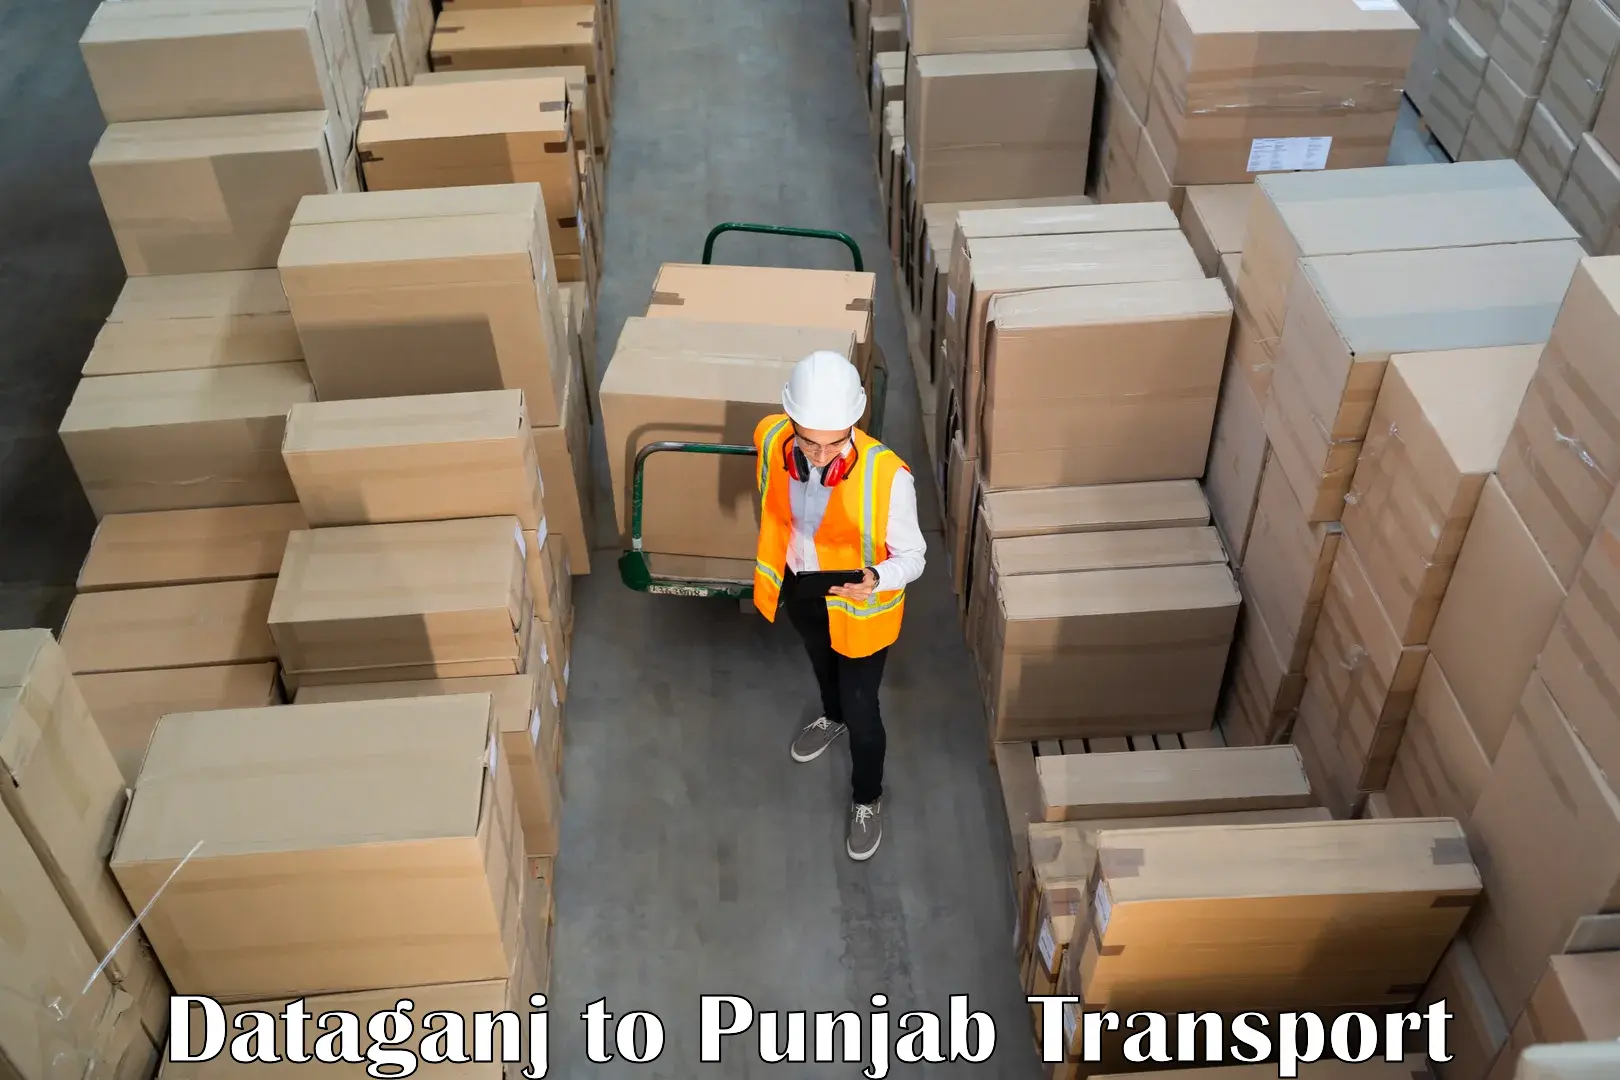 Road transport online services Dataganj to Punjab